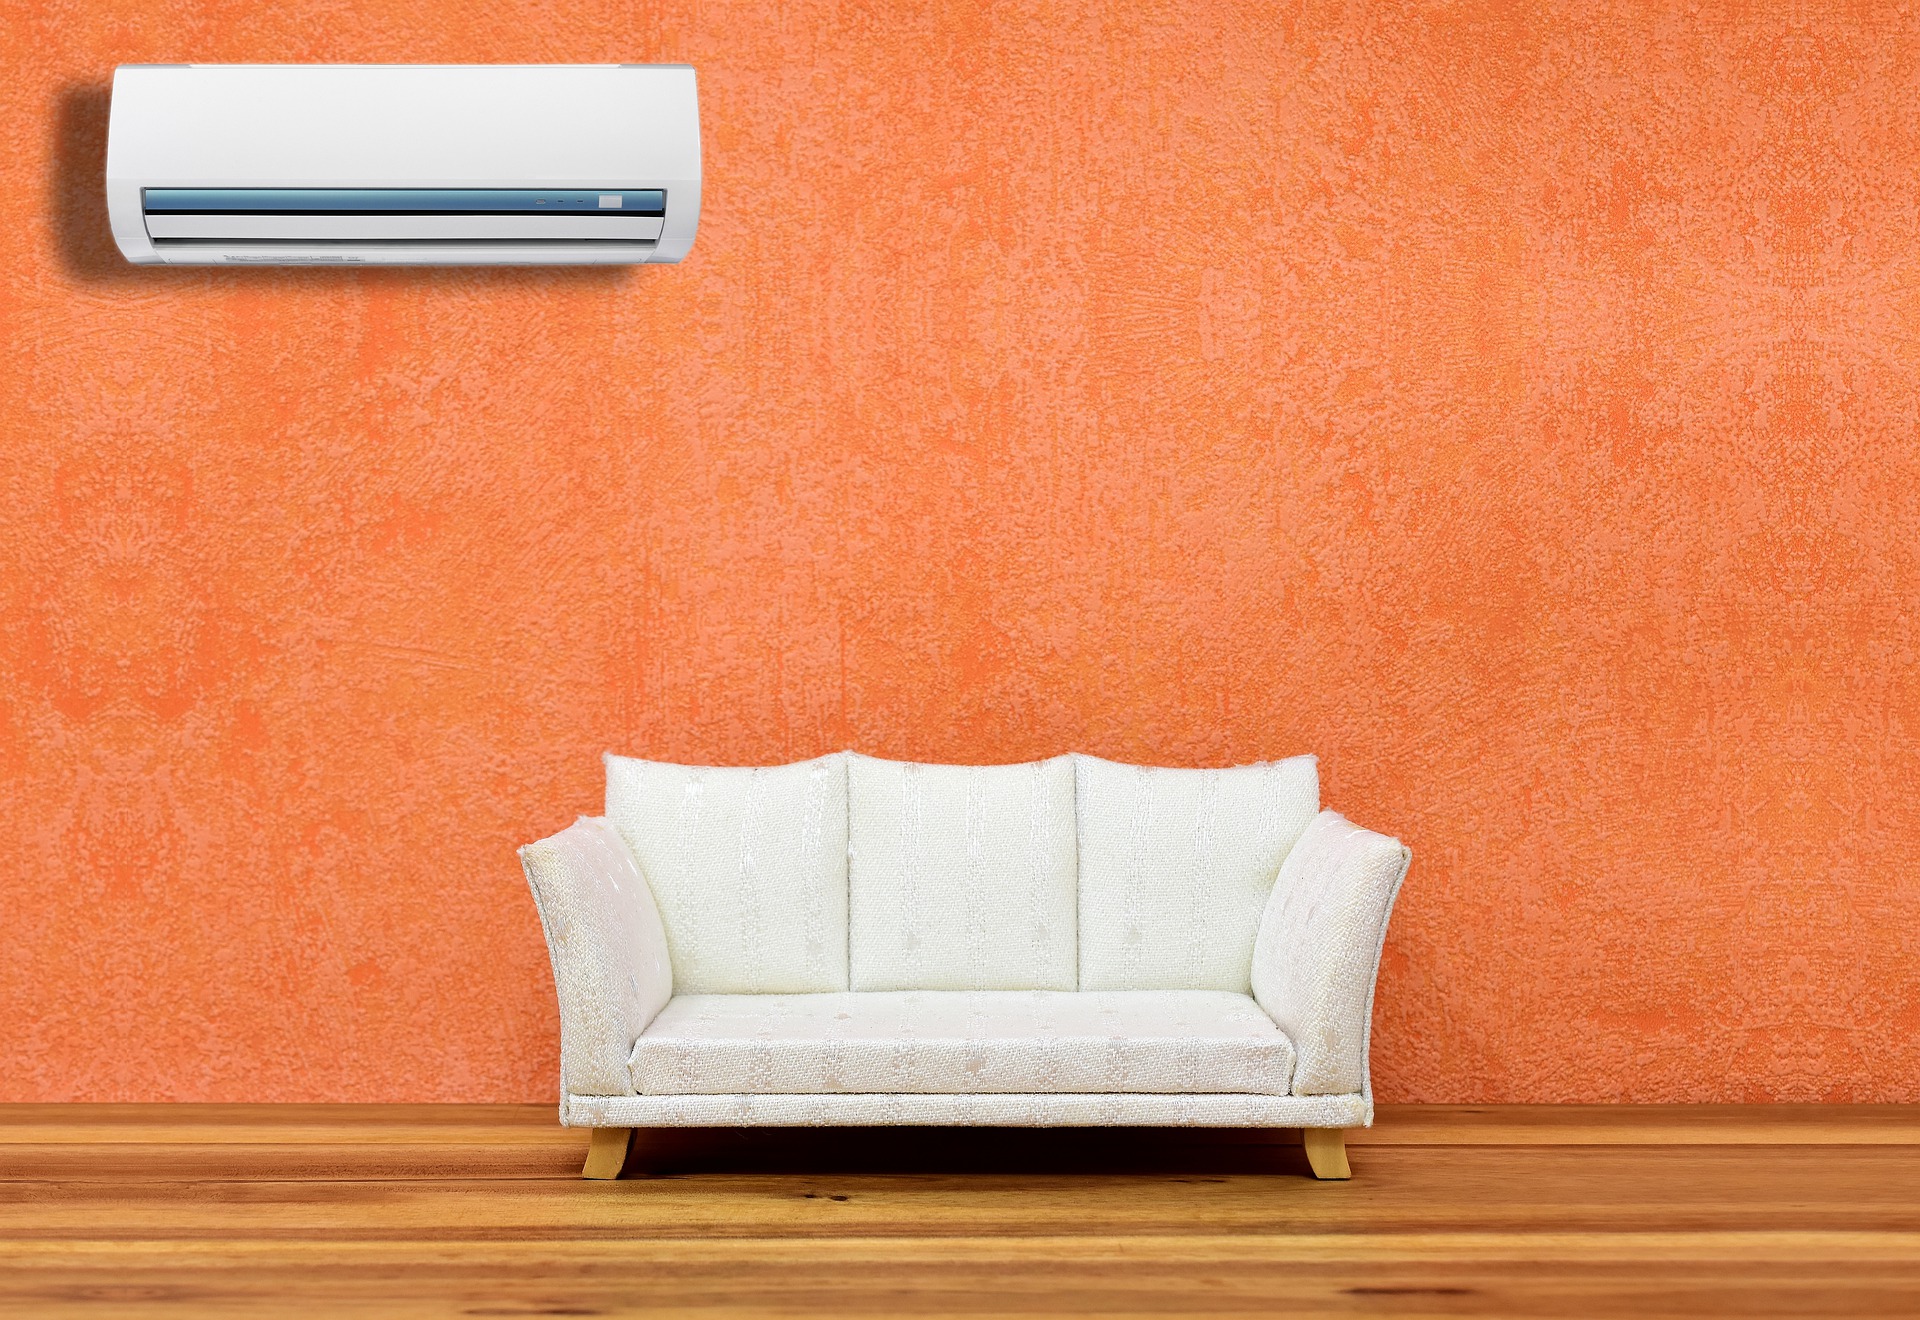 El aire acondicionado es uno de los electrodomésticos que más energía gasta del hogar.